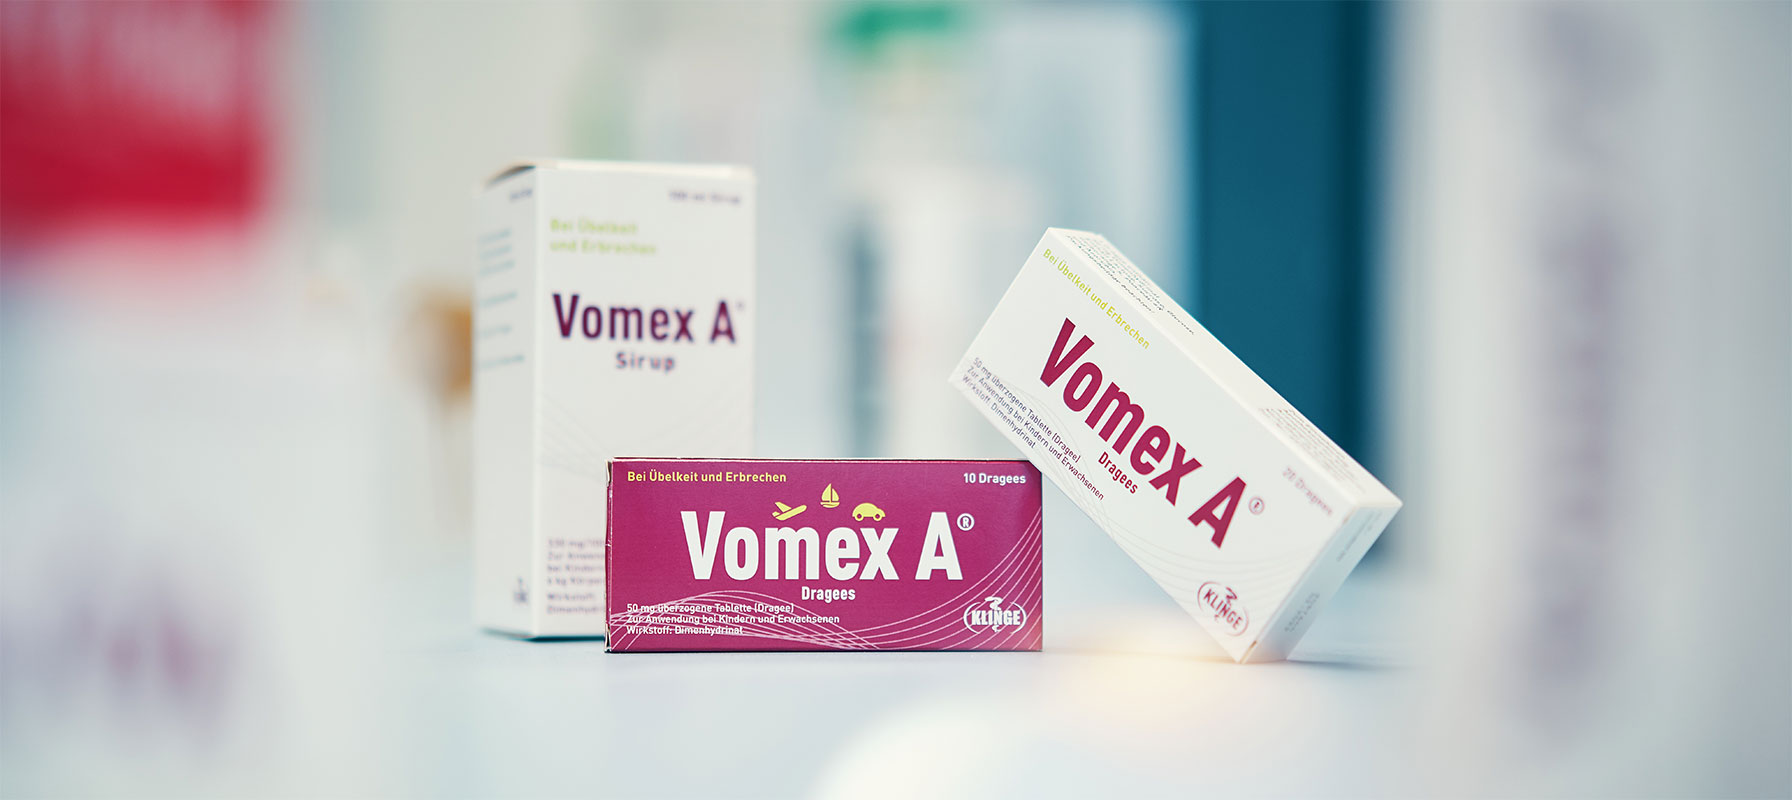 Vomex A® kann Übelkeit und Brechreiz in Folge einer Lebensmittelvergiftung lindern.